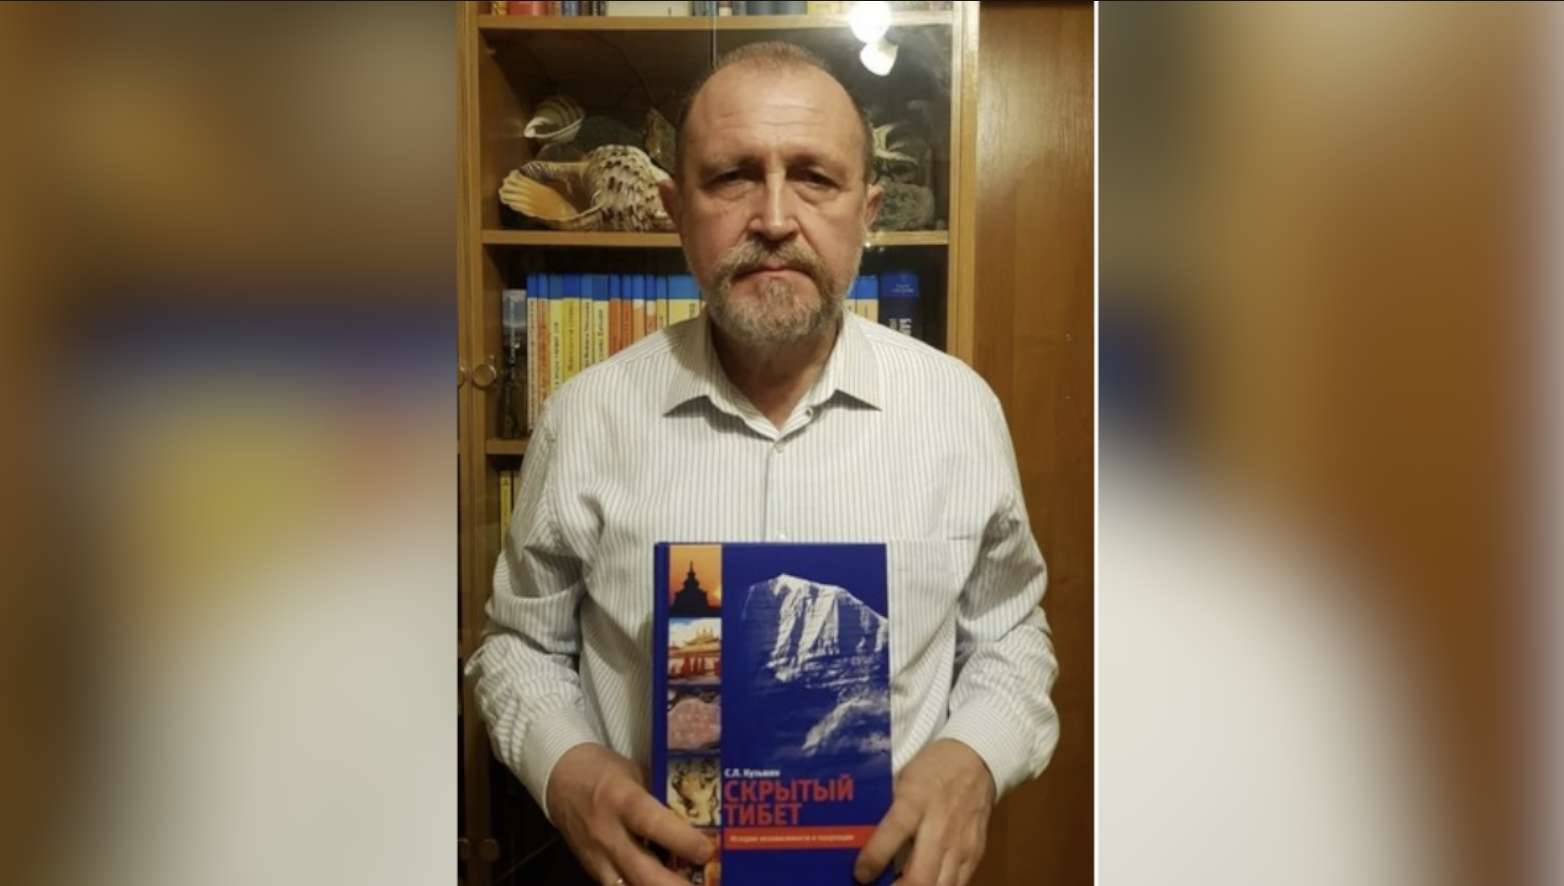 俄罗斯作家谢尔盖·库兹敏博士与俄语版《被隐藏的西藏》